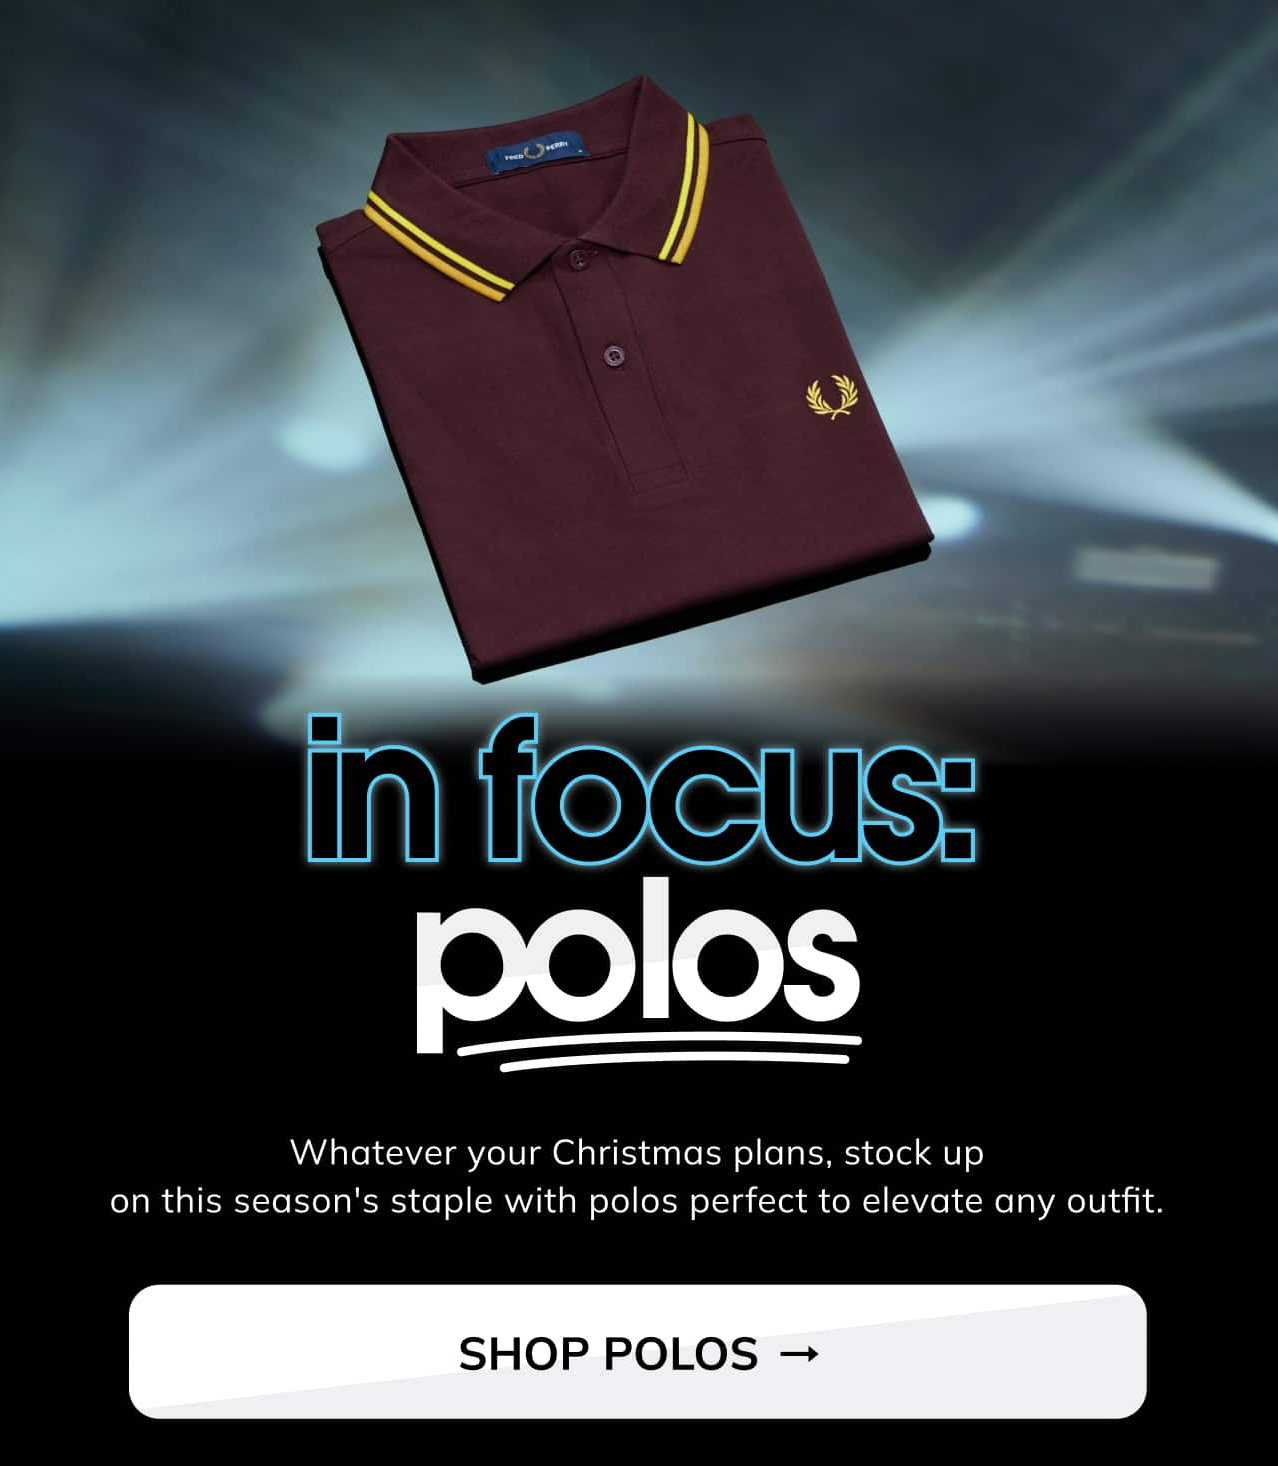 scottsmenswear: Polo shirts: The wardrobe staple | Milled